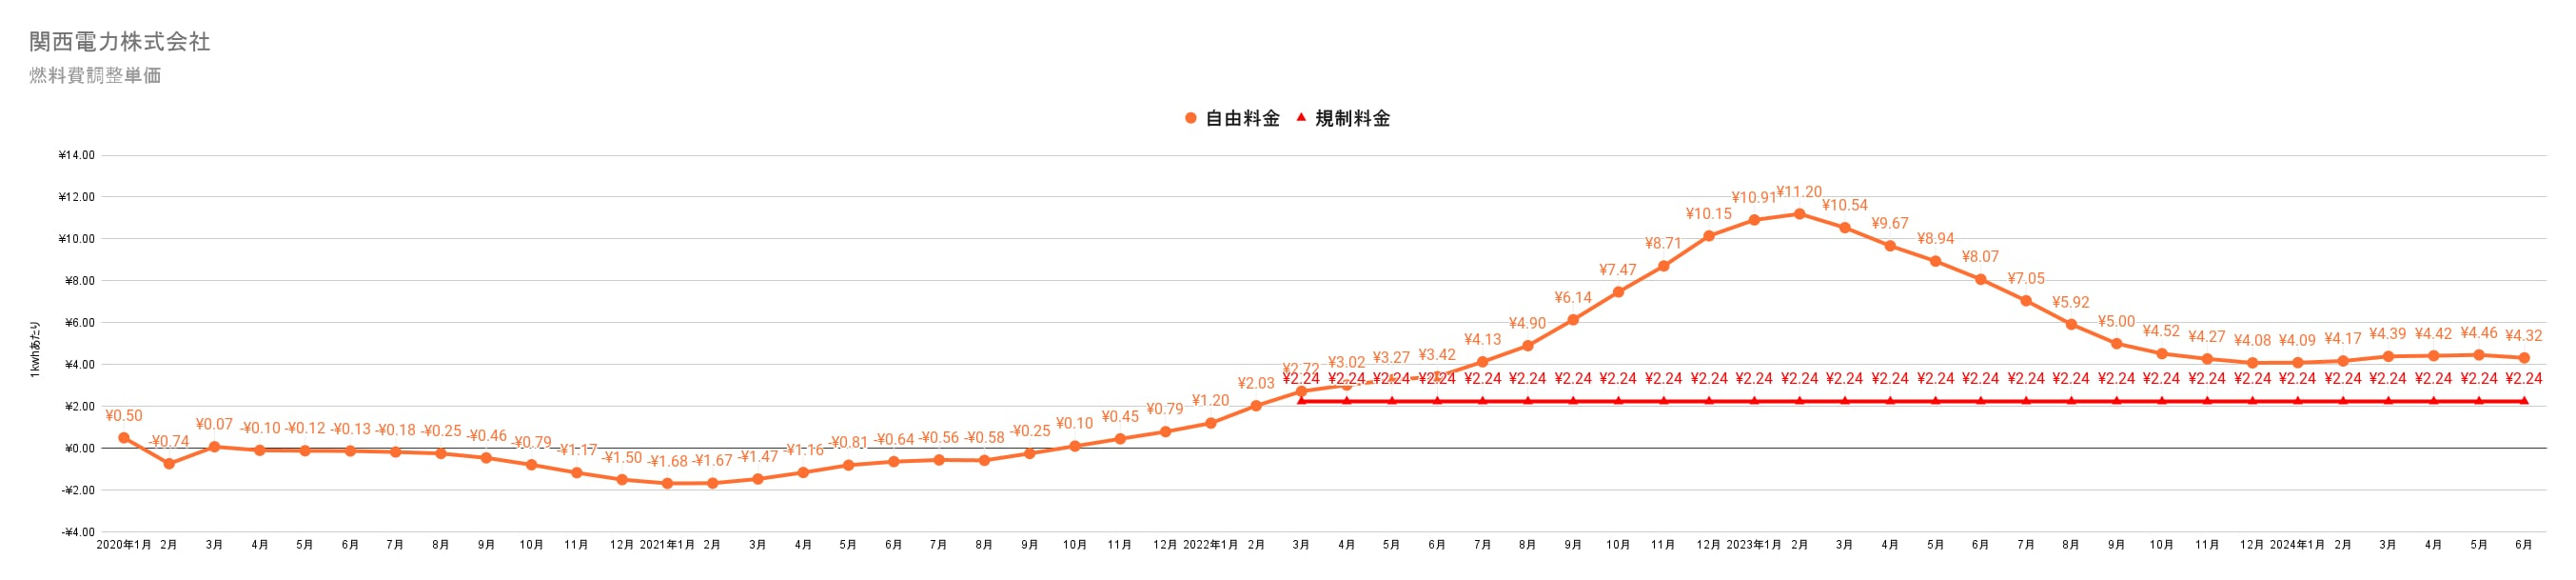 関西電力の燃料費調整額単価　過去3年間の推移グラフ